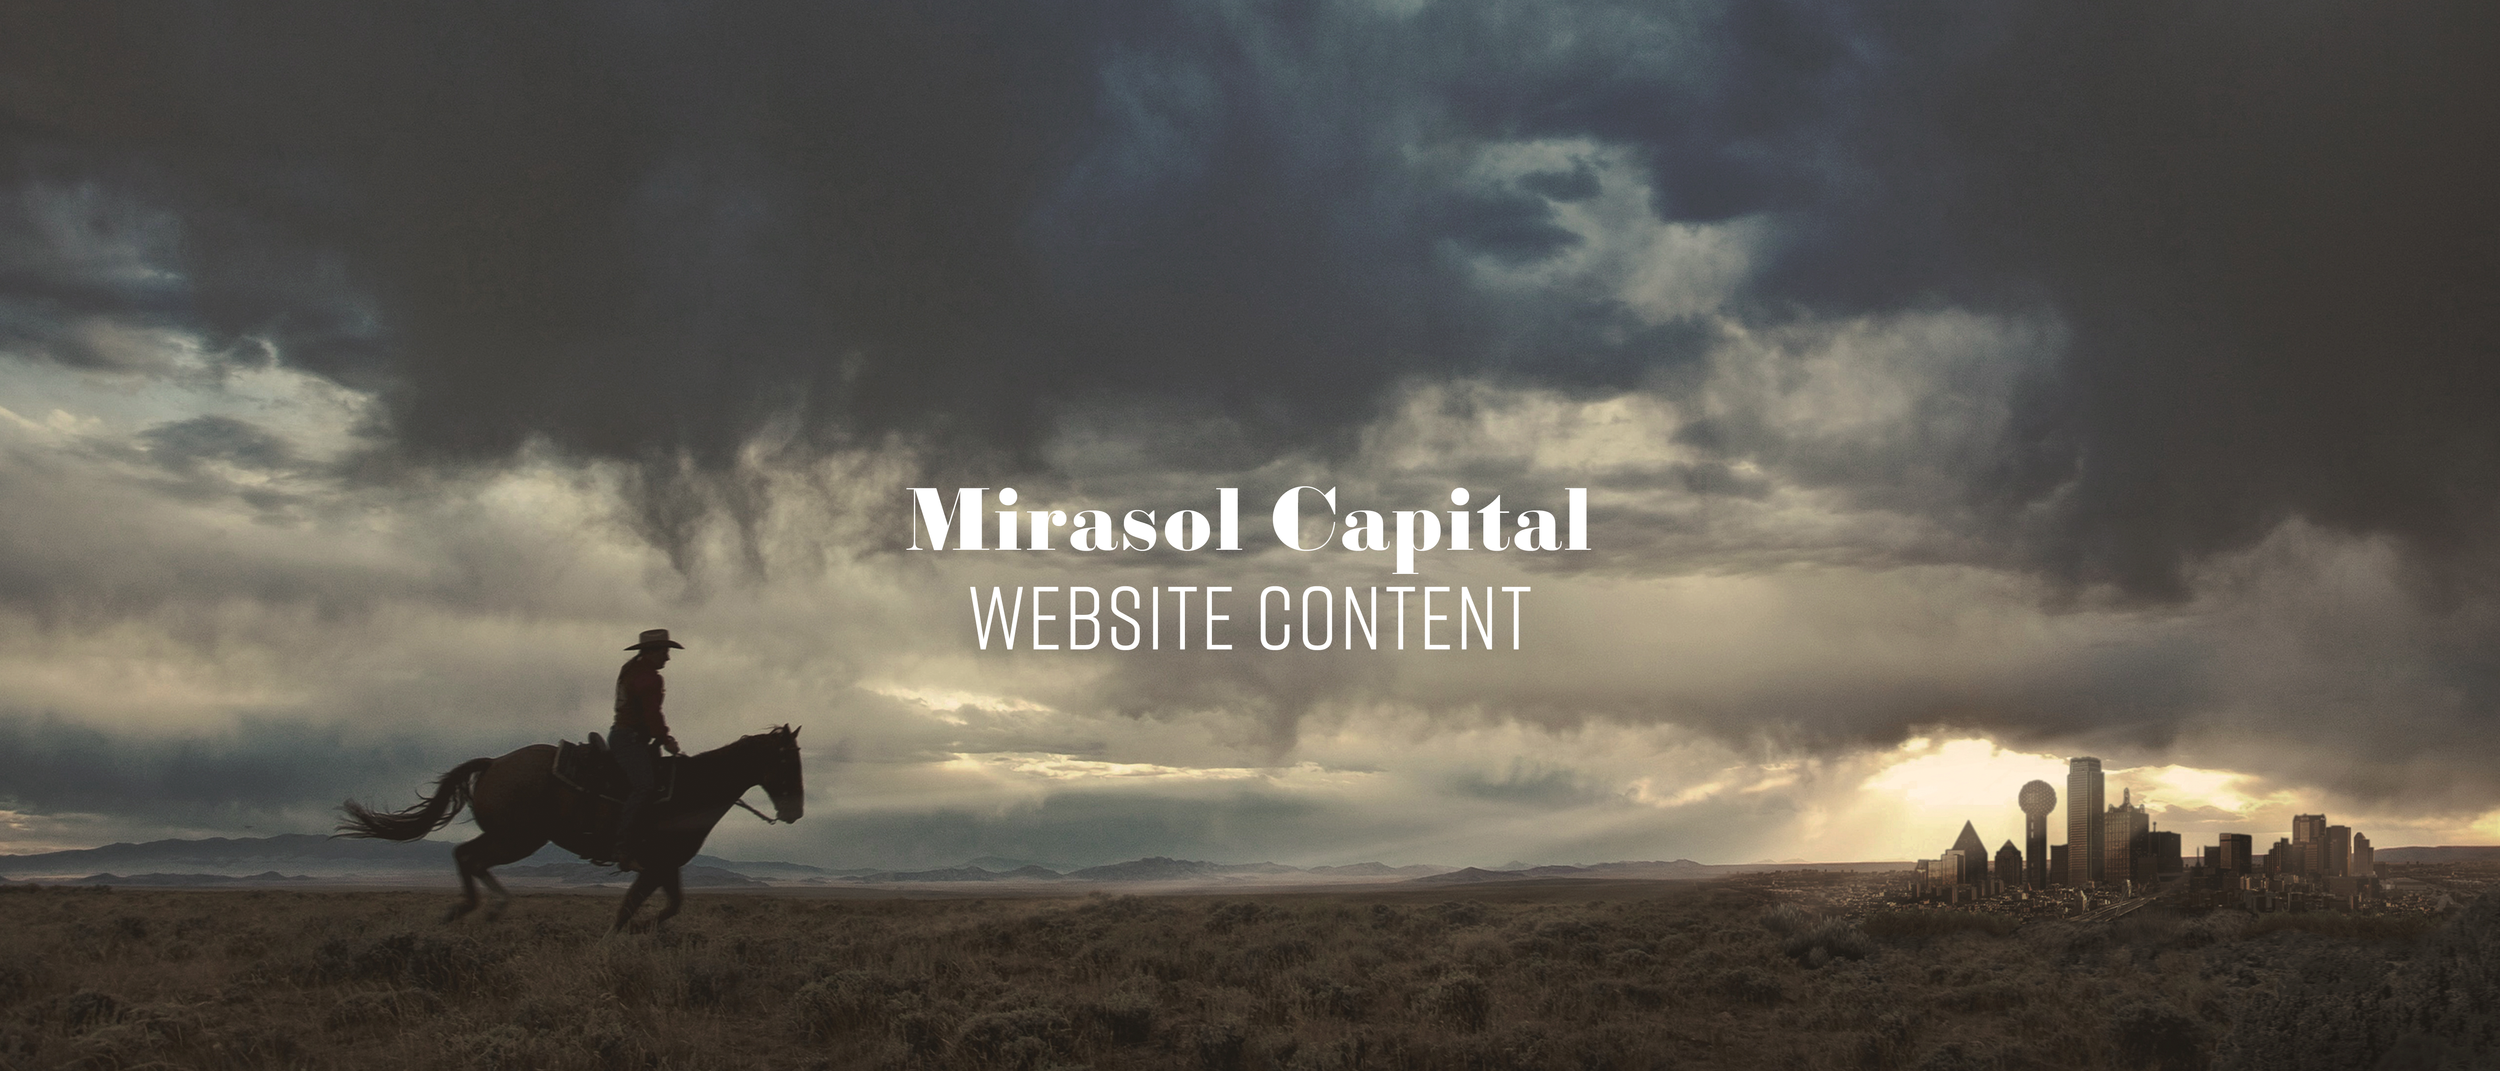 Mirasol capital website.png